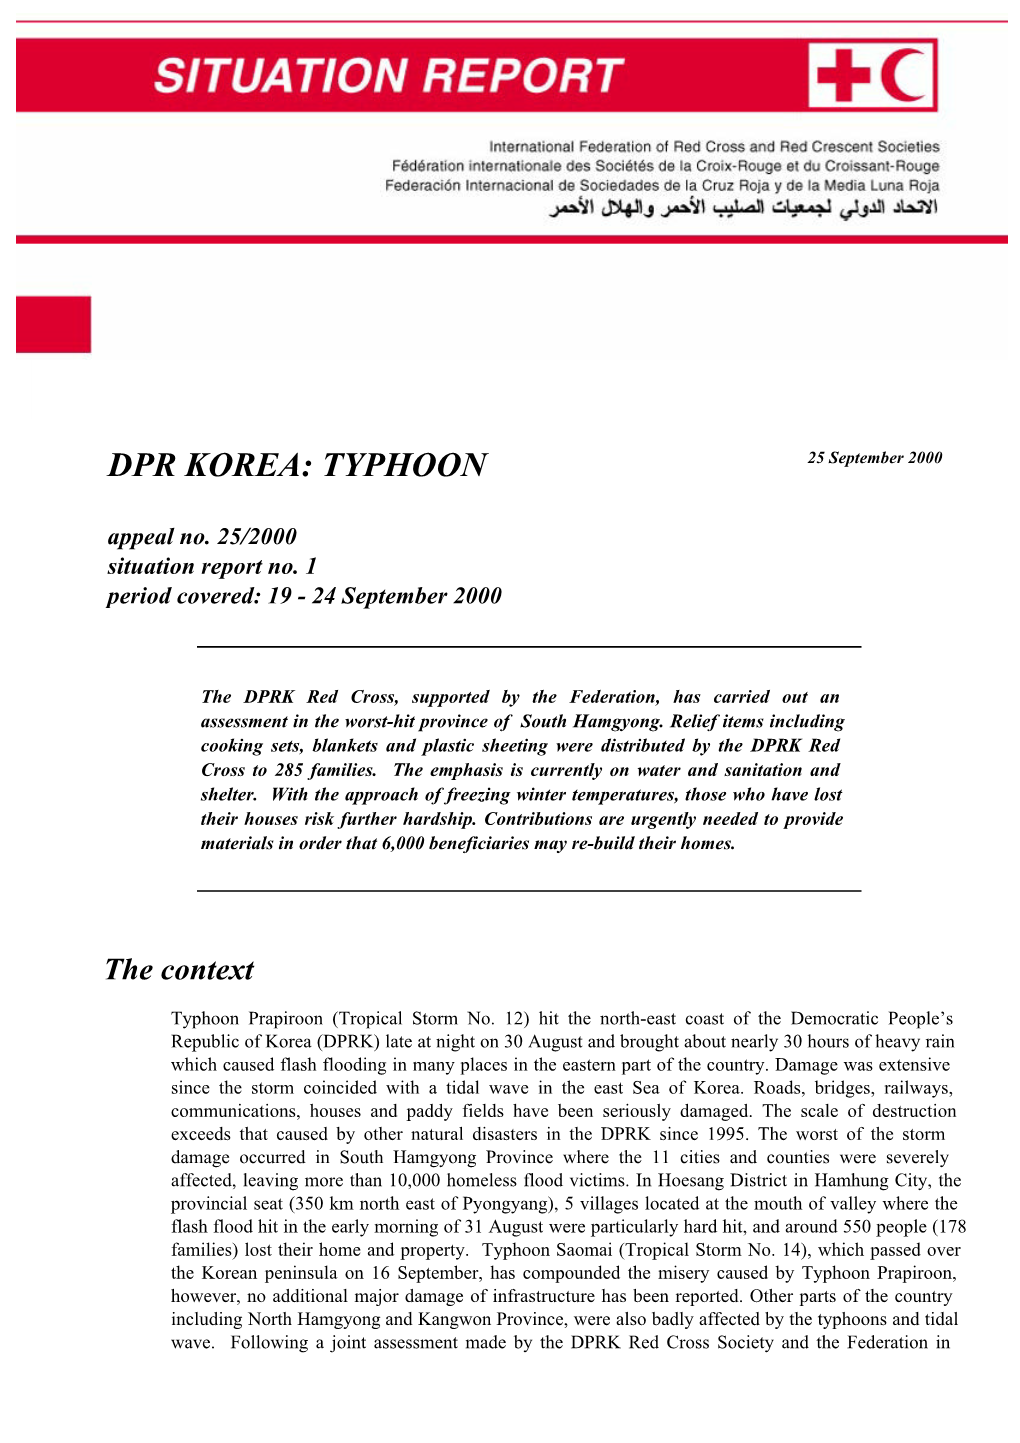 DPR KOREA TYPHOON (Appeal 25/2000)